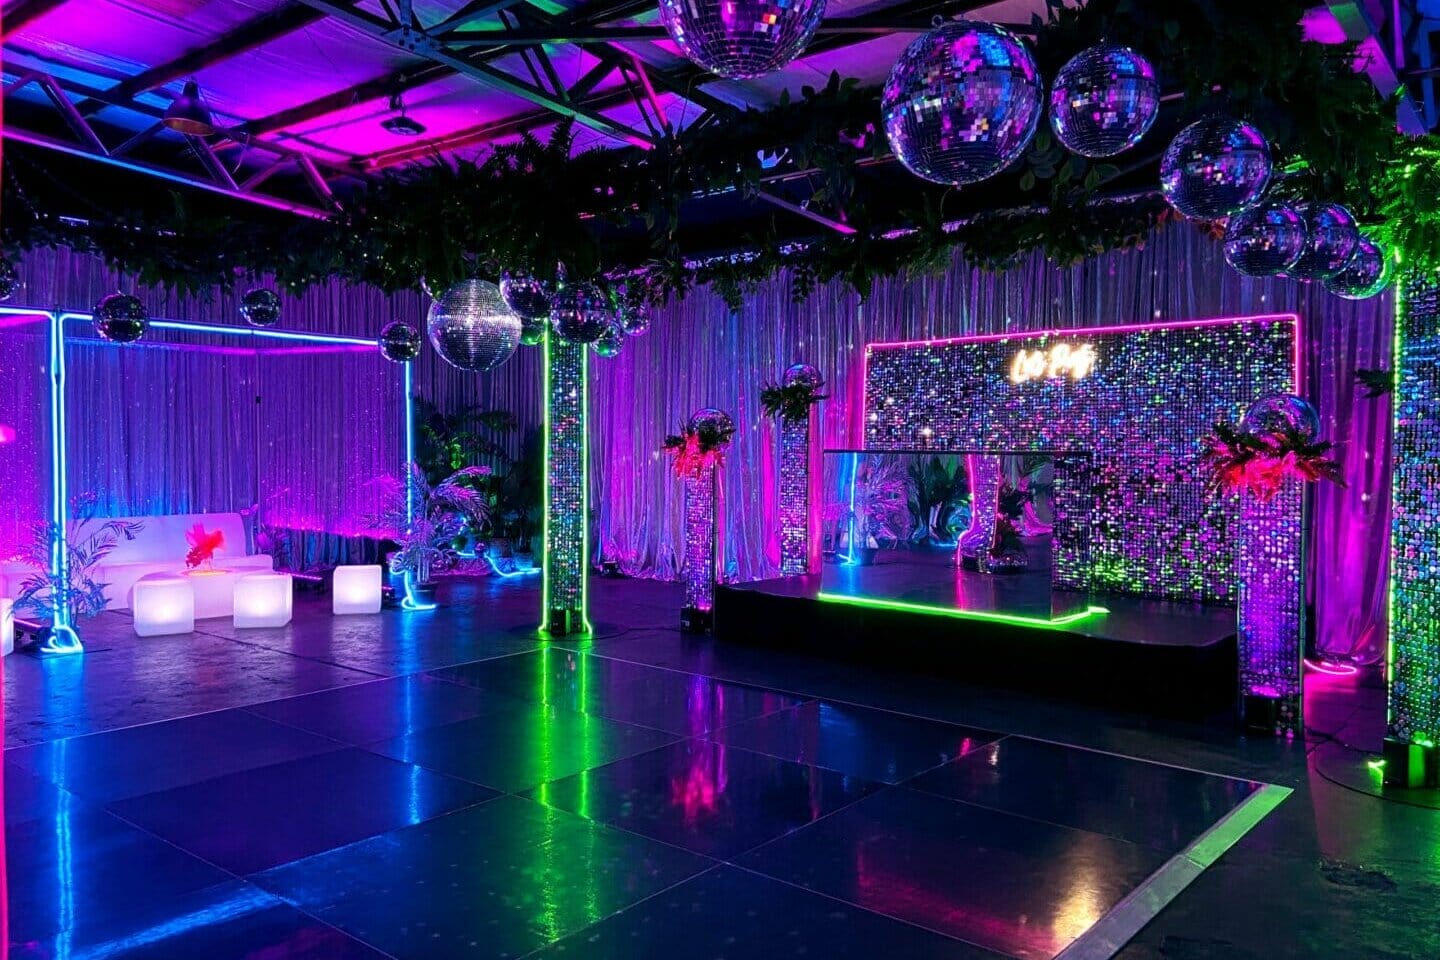 dance floor area with mirror balls and neon lights